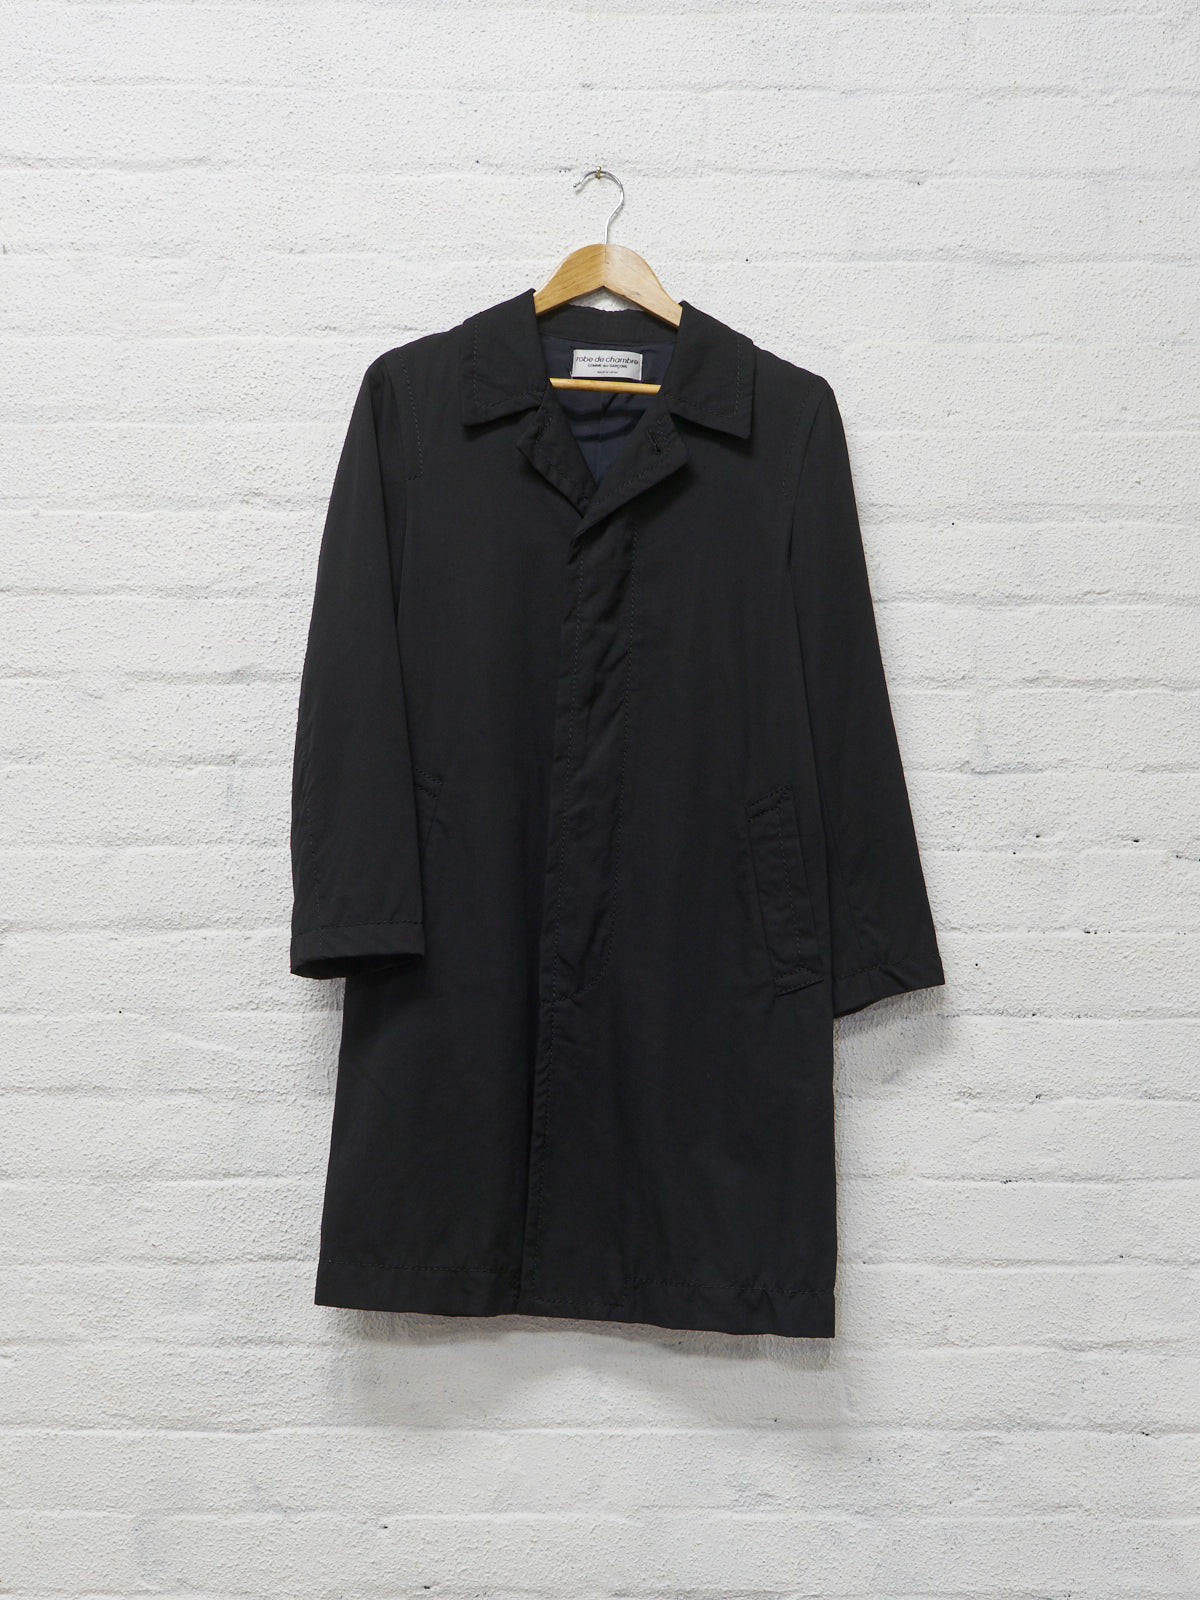 Robe de Chambre Comme des Garcons 2002 black wool topstitched coat - womens M S